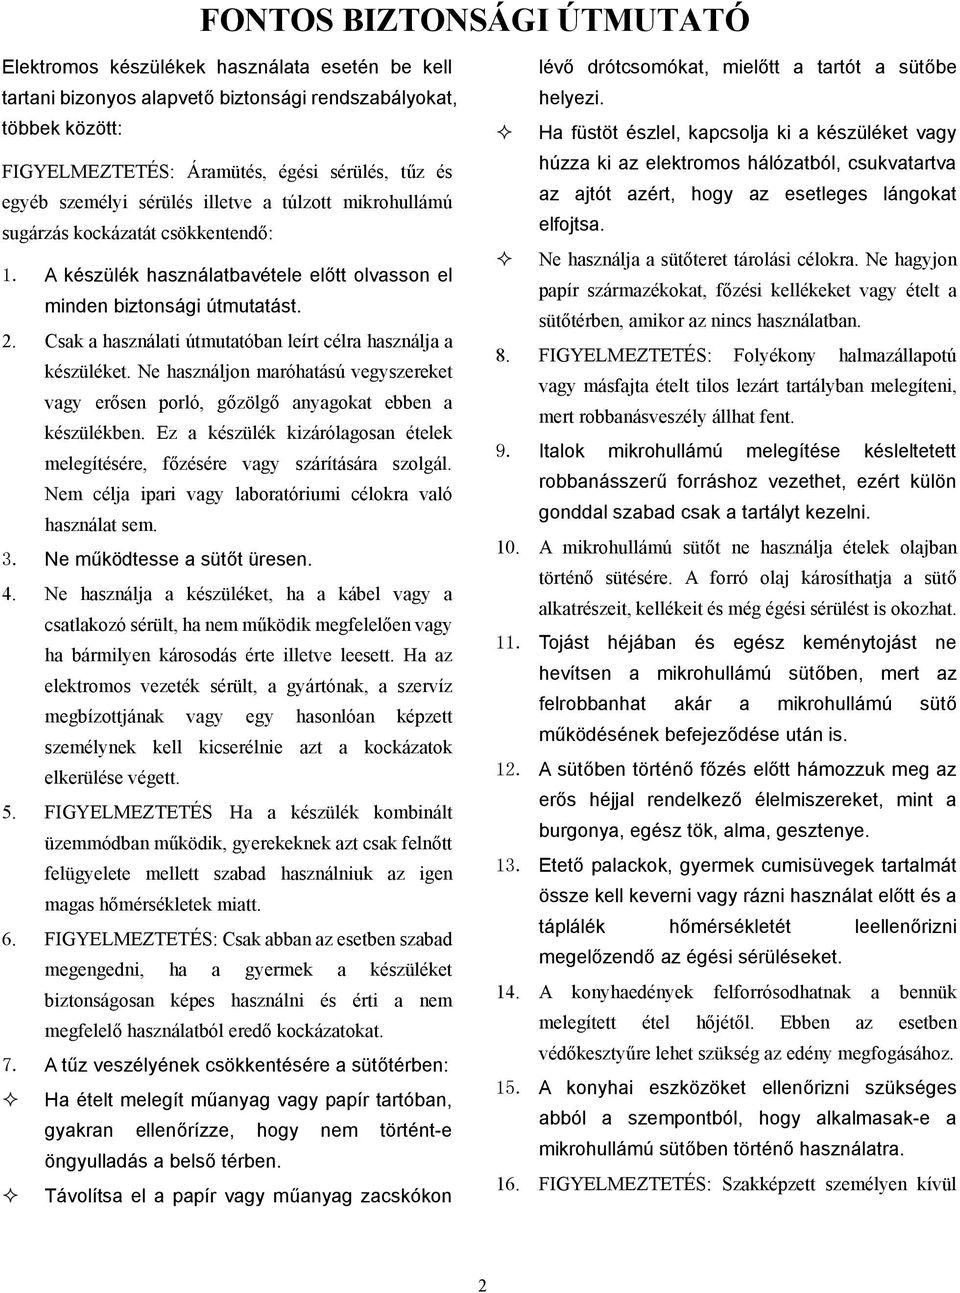 HASZNÁLATI ÚTMUTATÓ GRILLES MIKROHULLÁMÚ SÜTŐ MODELL: OM-025D - PDF  Ingyenes letöltés